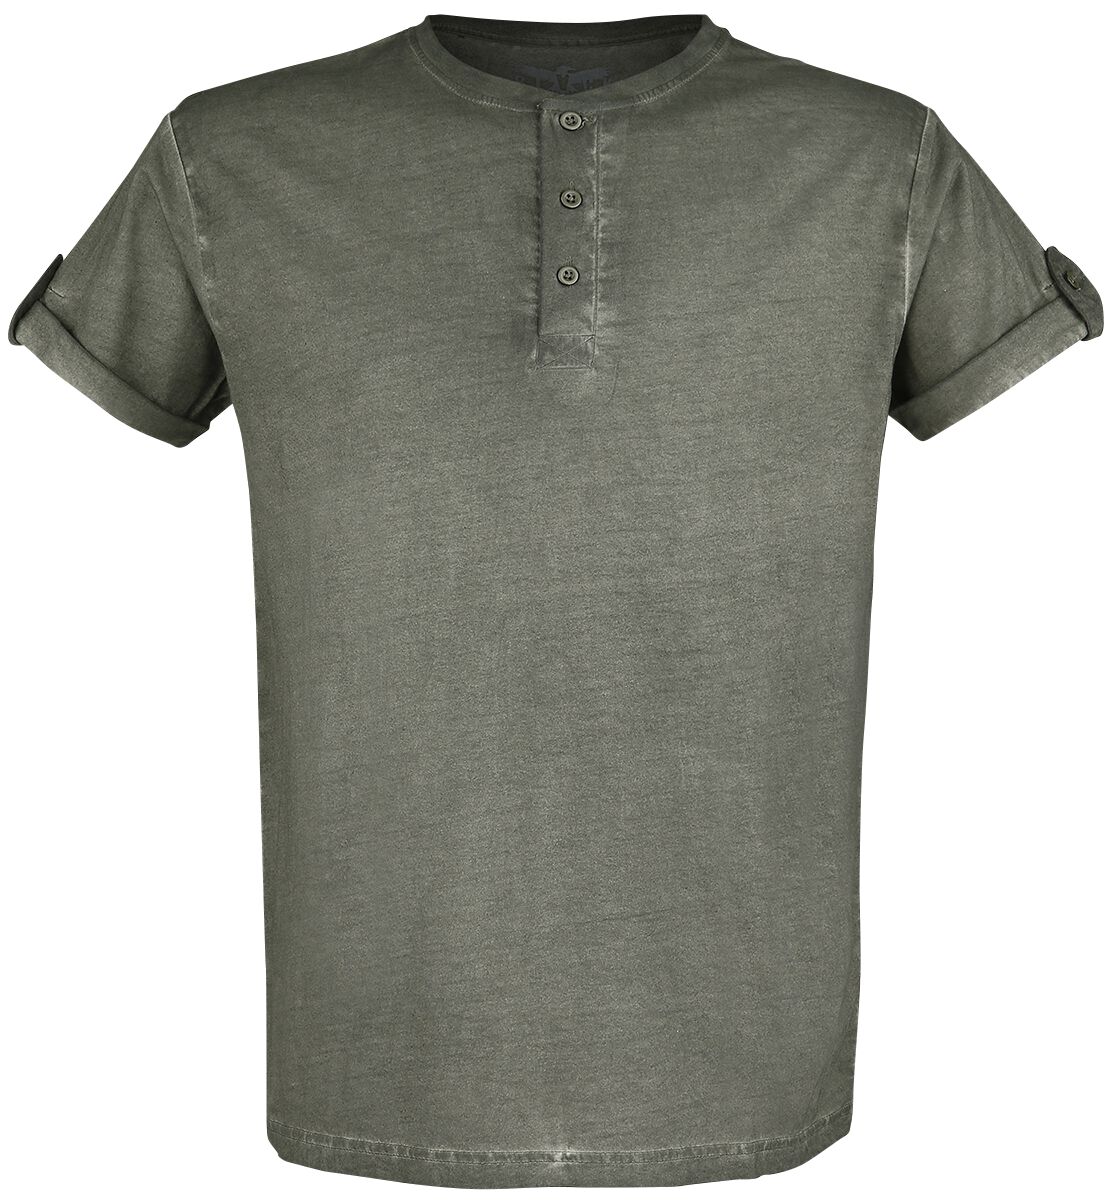 T-Shirt Manches courtes de Black Premium by EMP - T-Shirt Vert Boutonné Avec Manches Retroussées - S